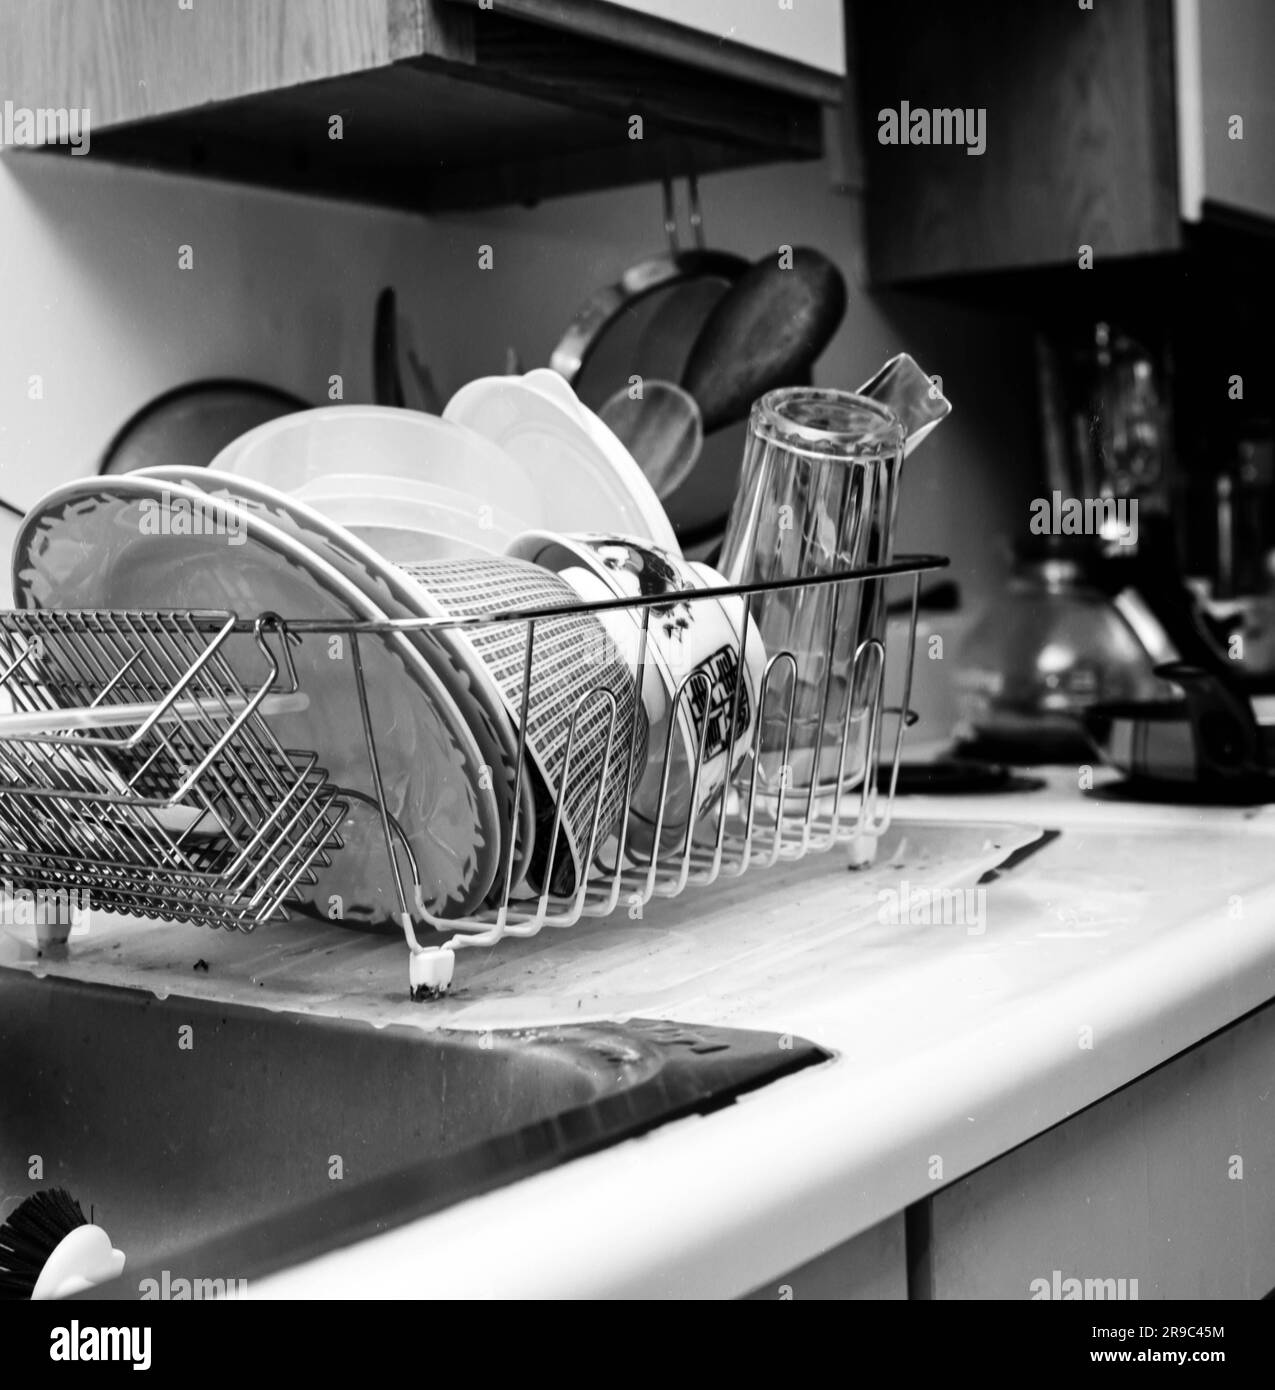 Dettagli della cucina in bianco e nero ripresi con Hasselblad con lente  planare da 80 mm -- gocciolatoio per lavello Foto stock - Alamy